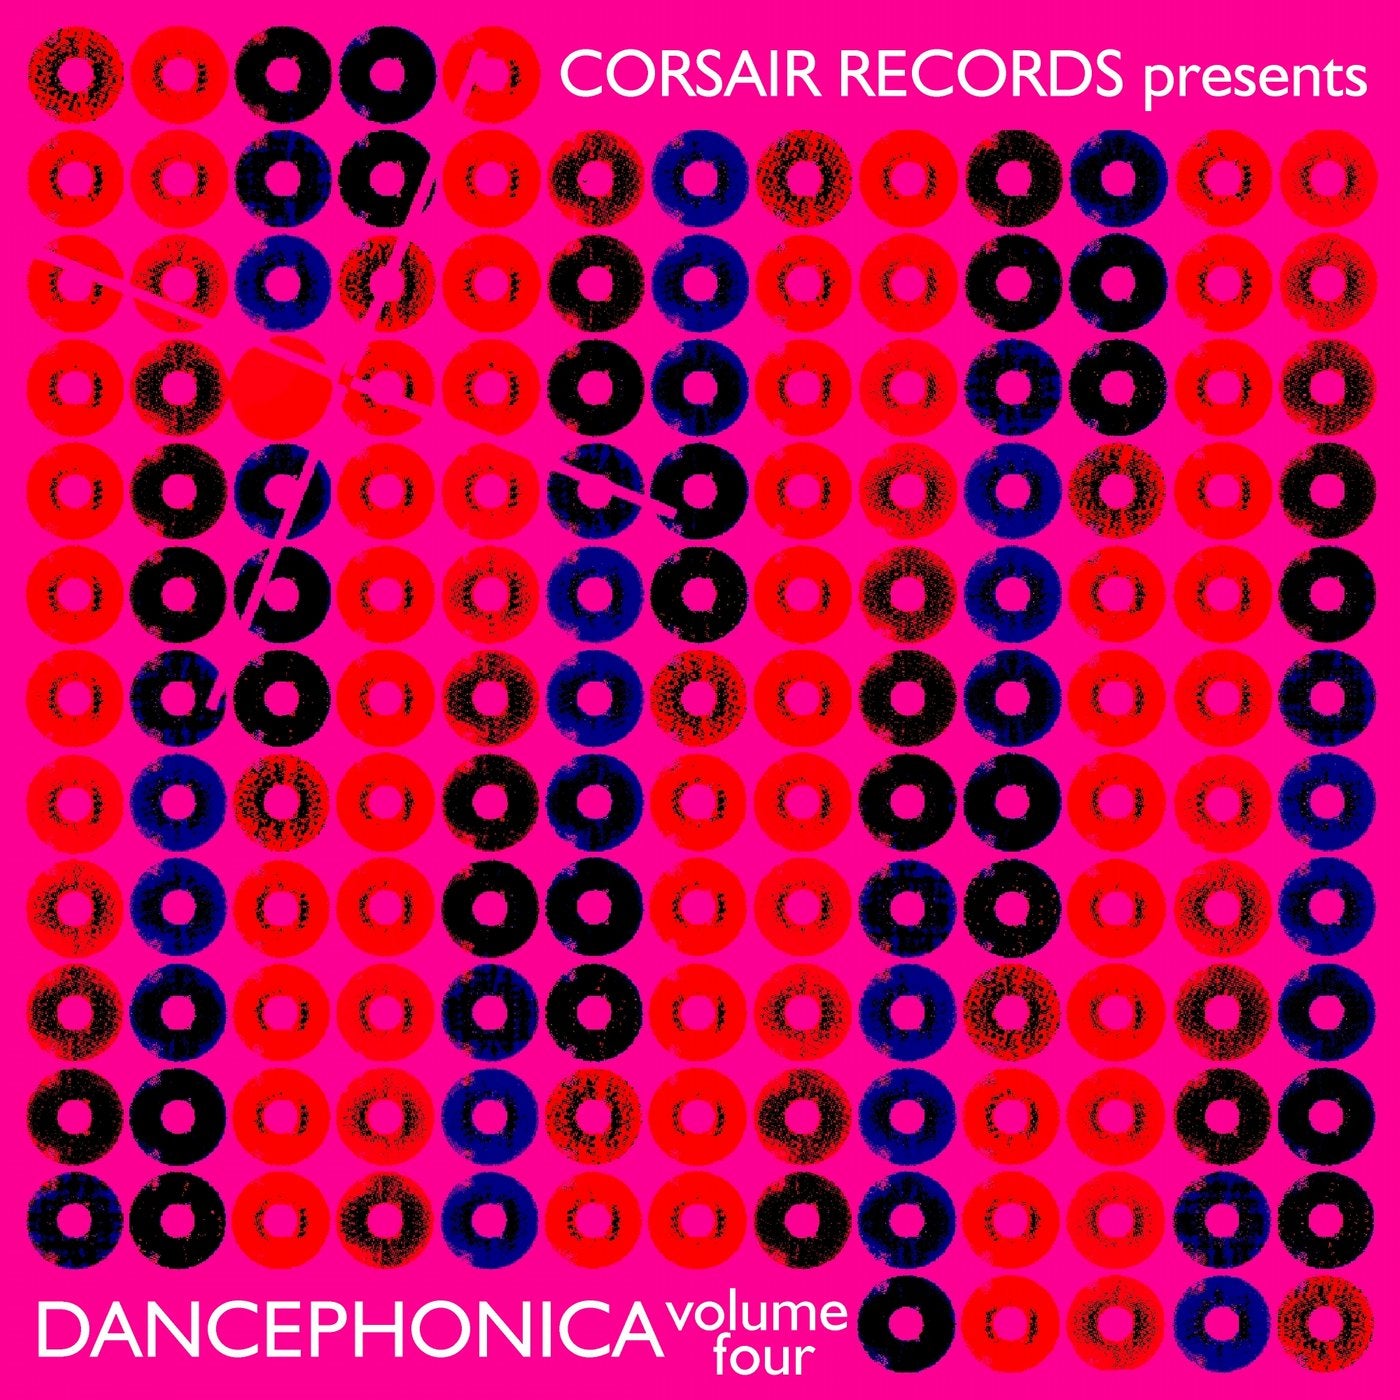 Corsair Records Presents Dancephonica, Vol. 4